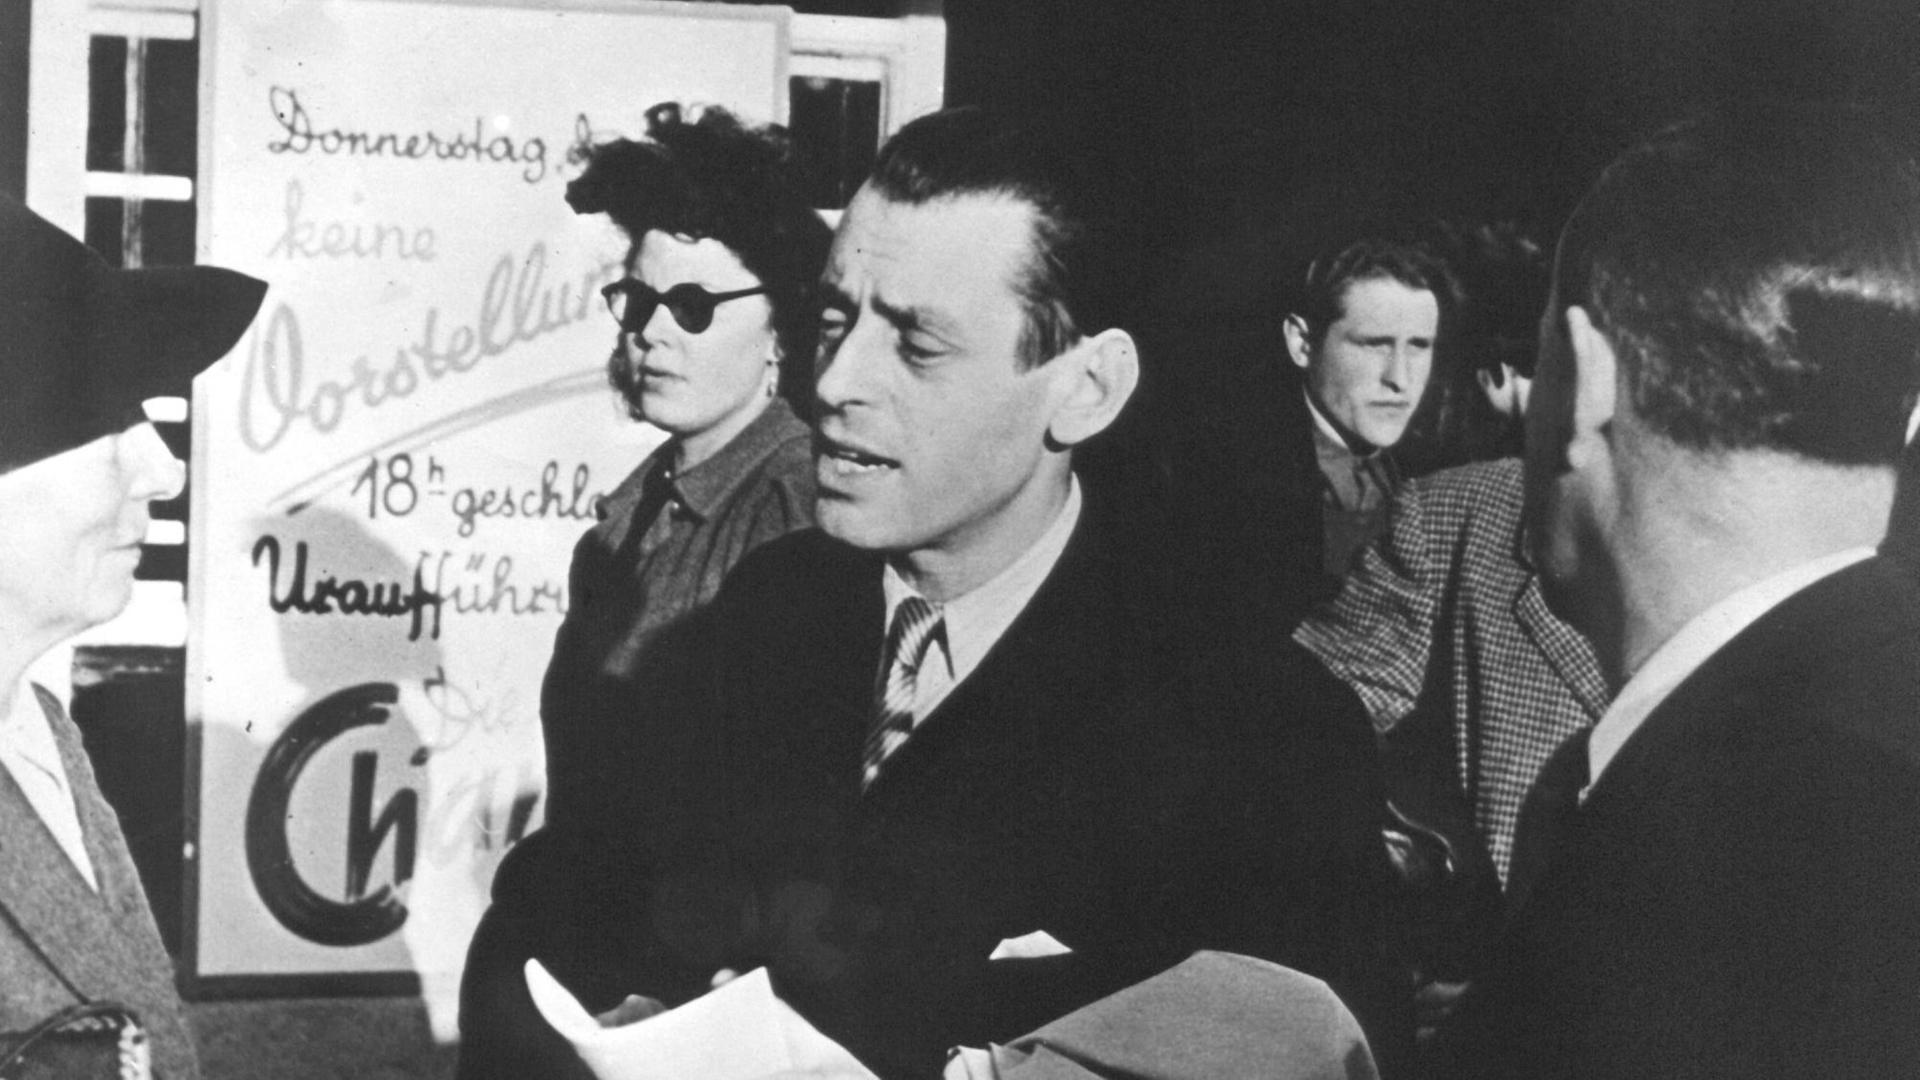 Der Schweizer Schauspieler und Regisseur Leopold Lindtberg (M) vor der Uraufführung des Films "Die letzte Chance" im Mai 1946 in München.